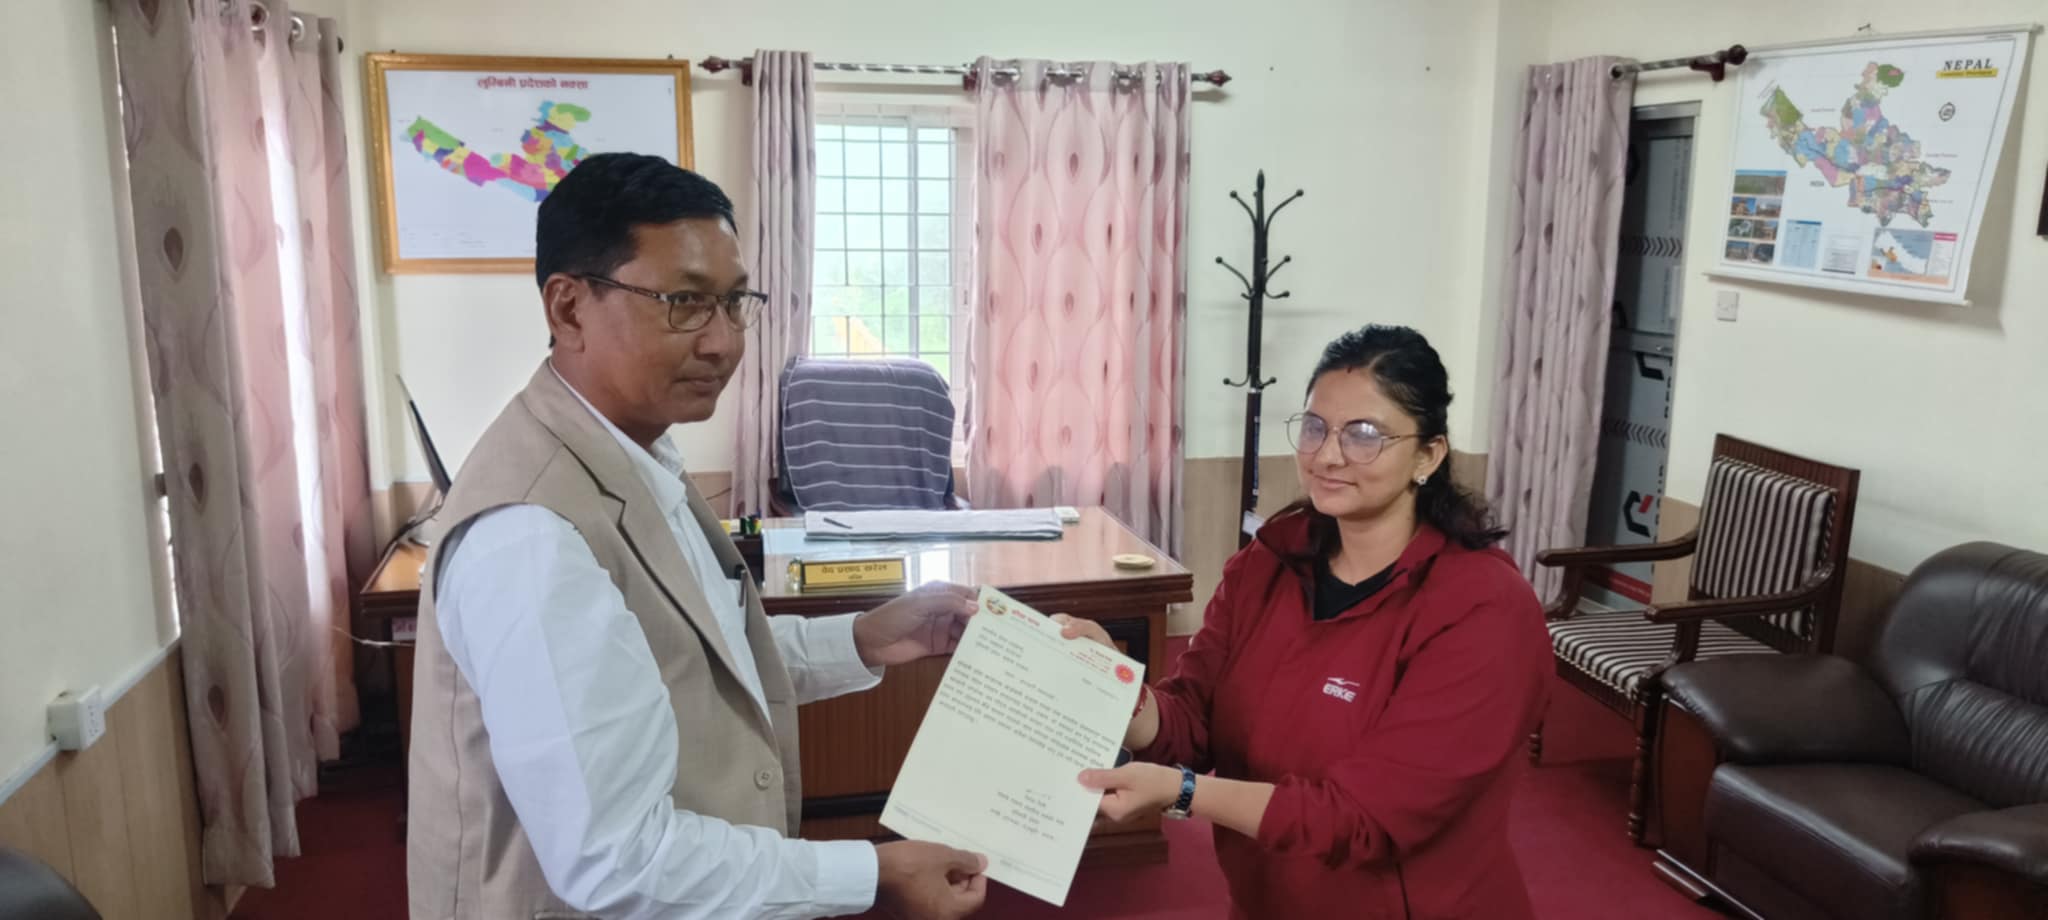 लुम्बिनीमा आफ्नै नेतृत्वमा सरकार बनाउन एमालेले थाल्यो पहल